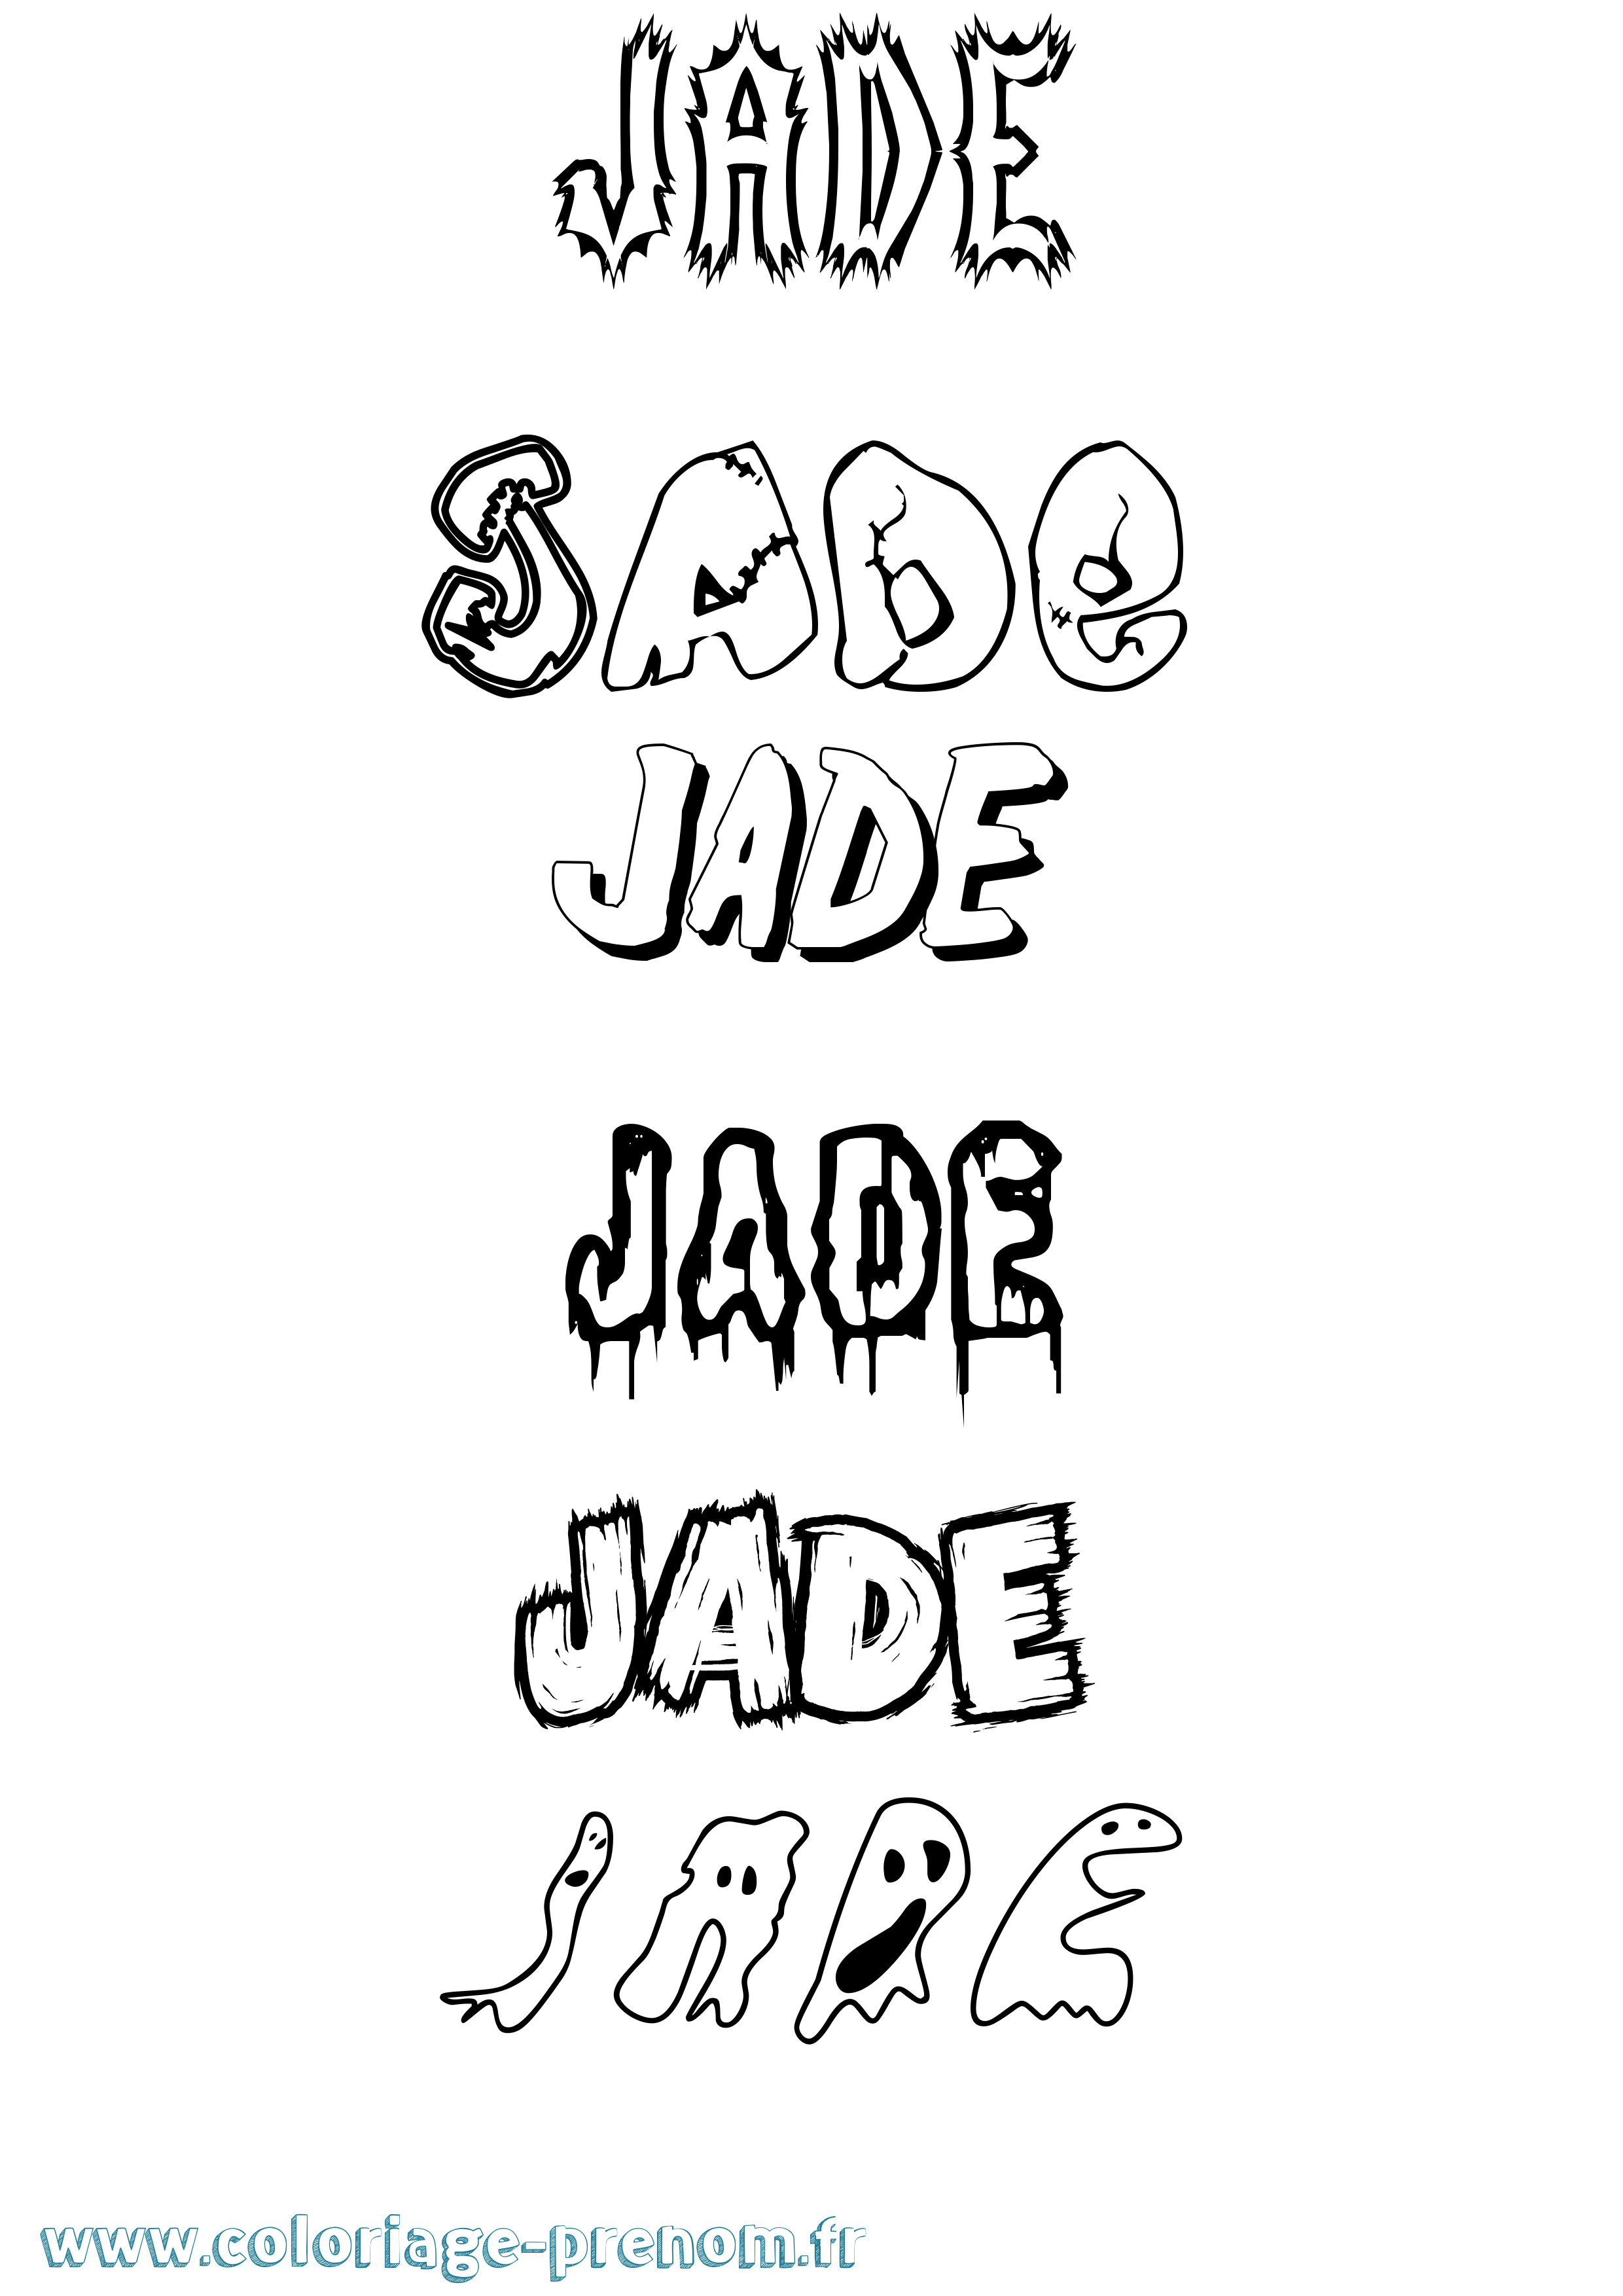 Coloriage prénom Jade Frisson